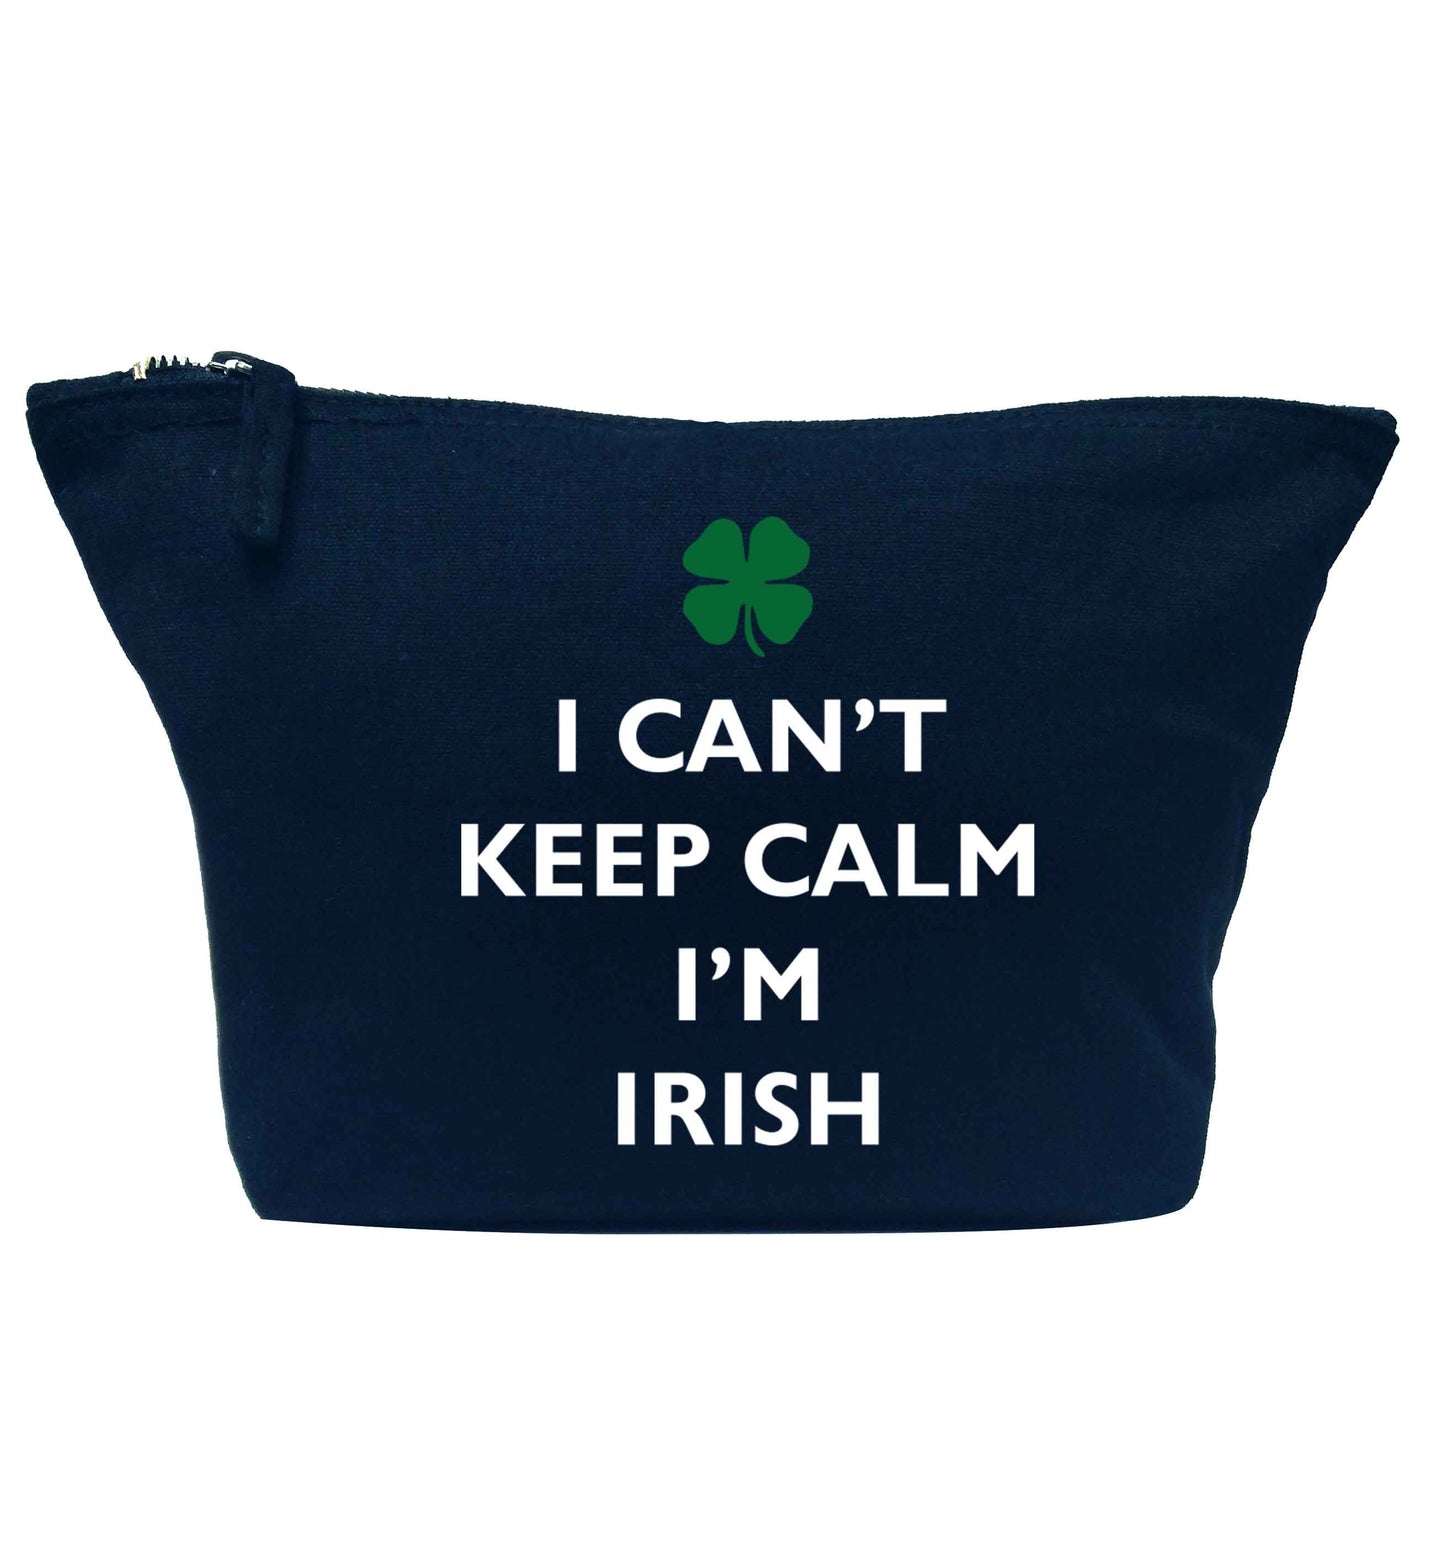 I can't keep calm I'm Irish navy makeup bag